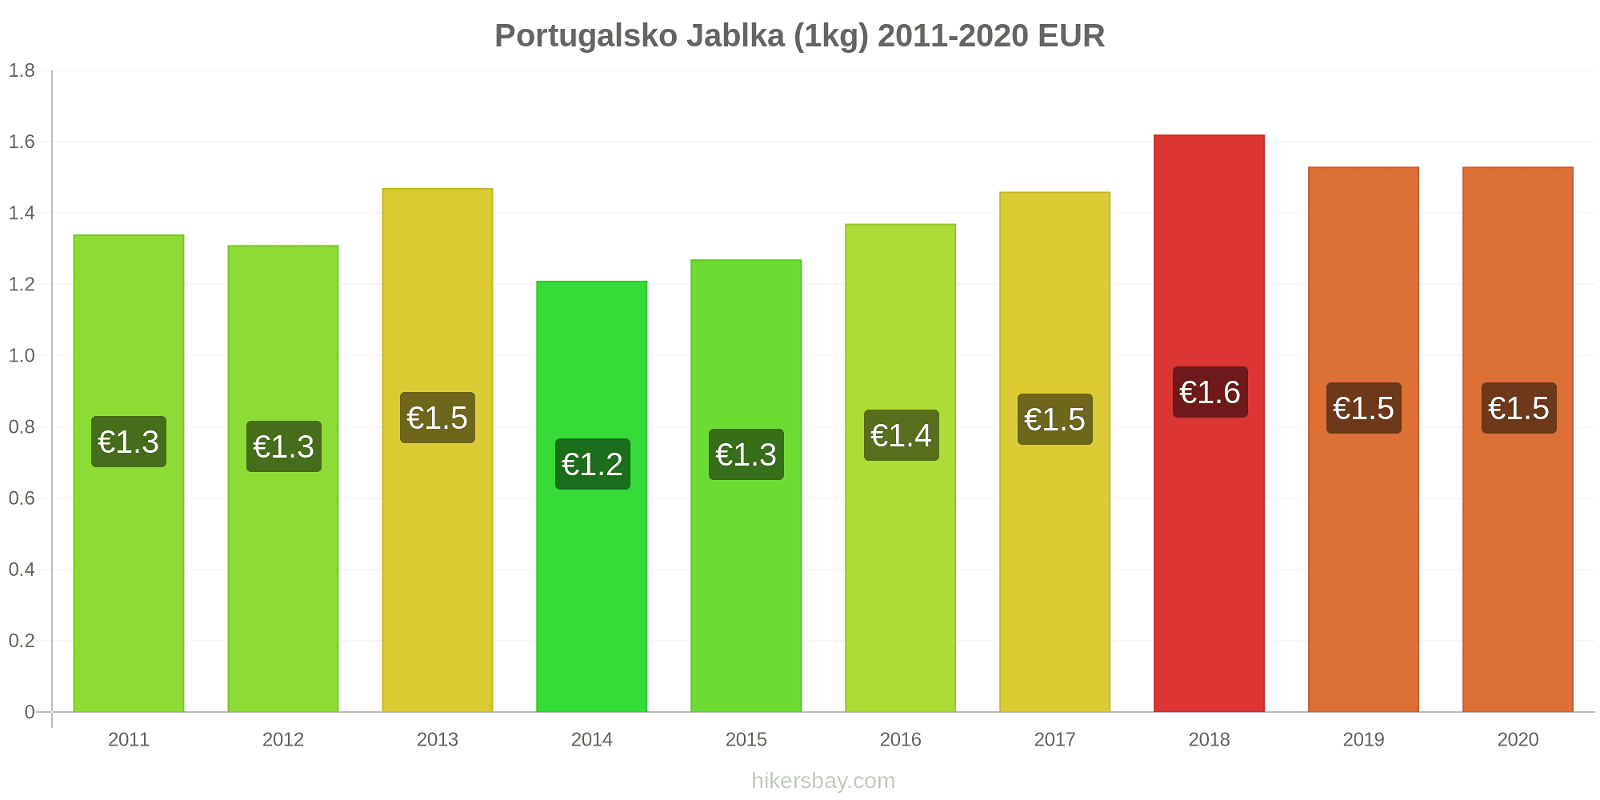 Portugalsko změny cen Jablka (1kg) hikersbay.com